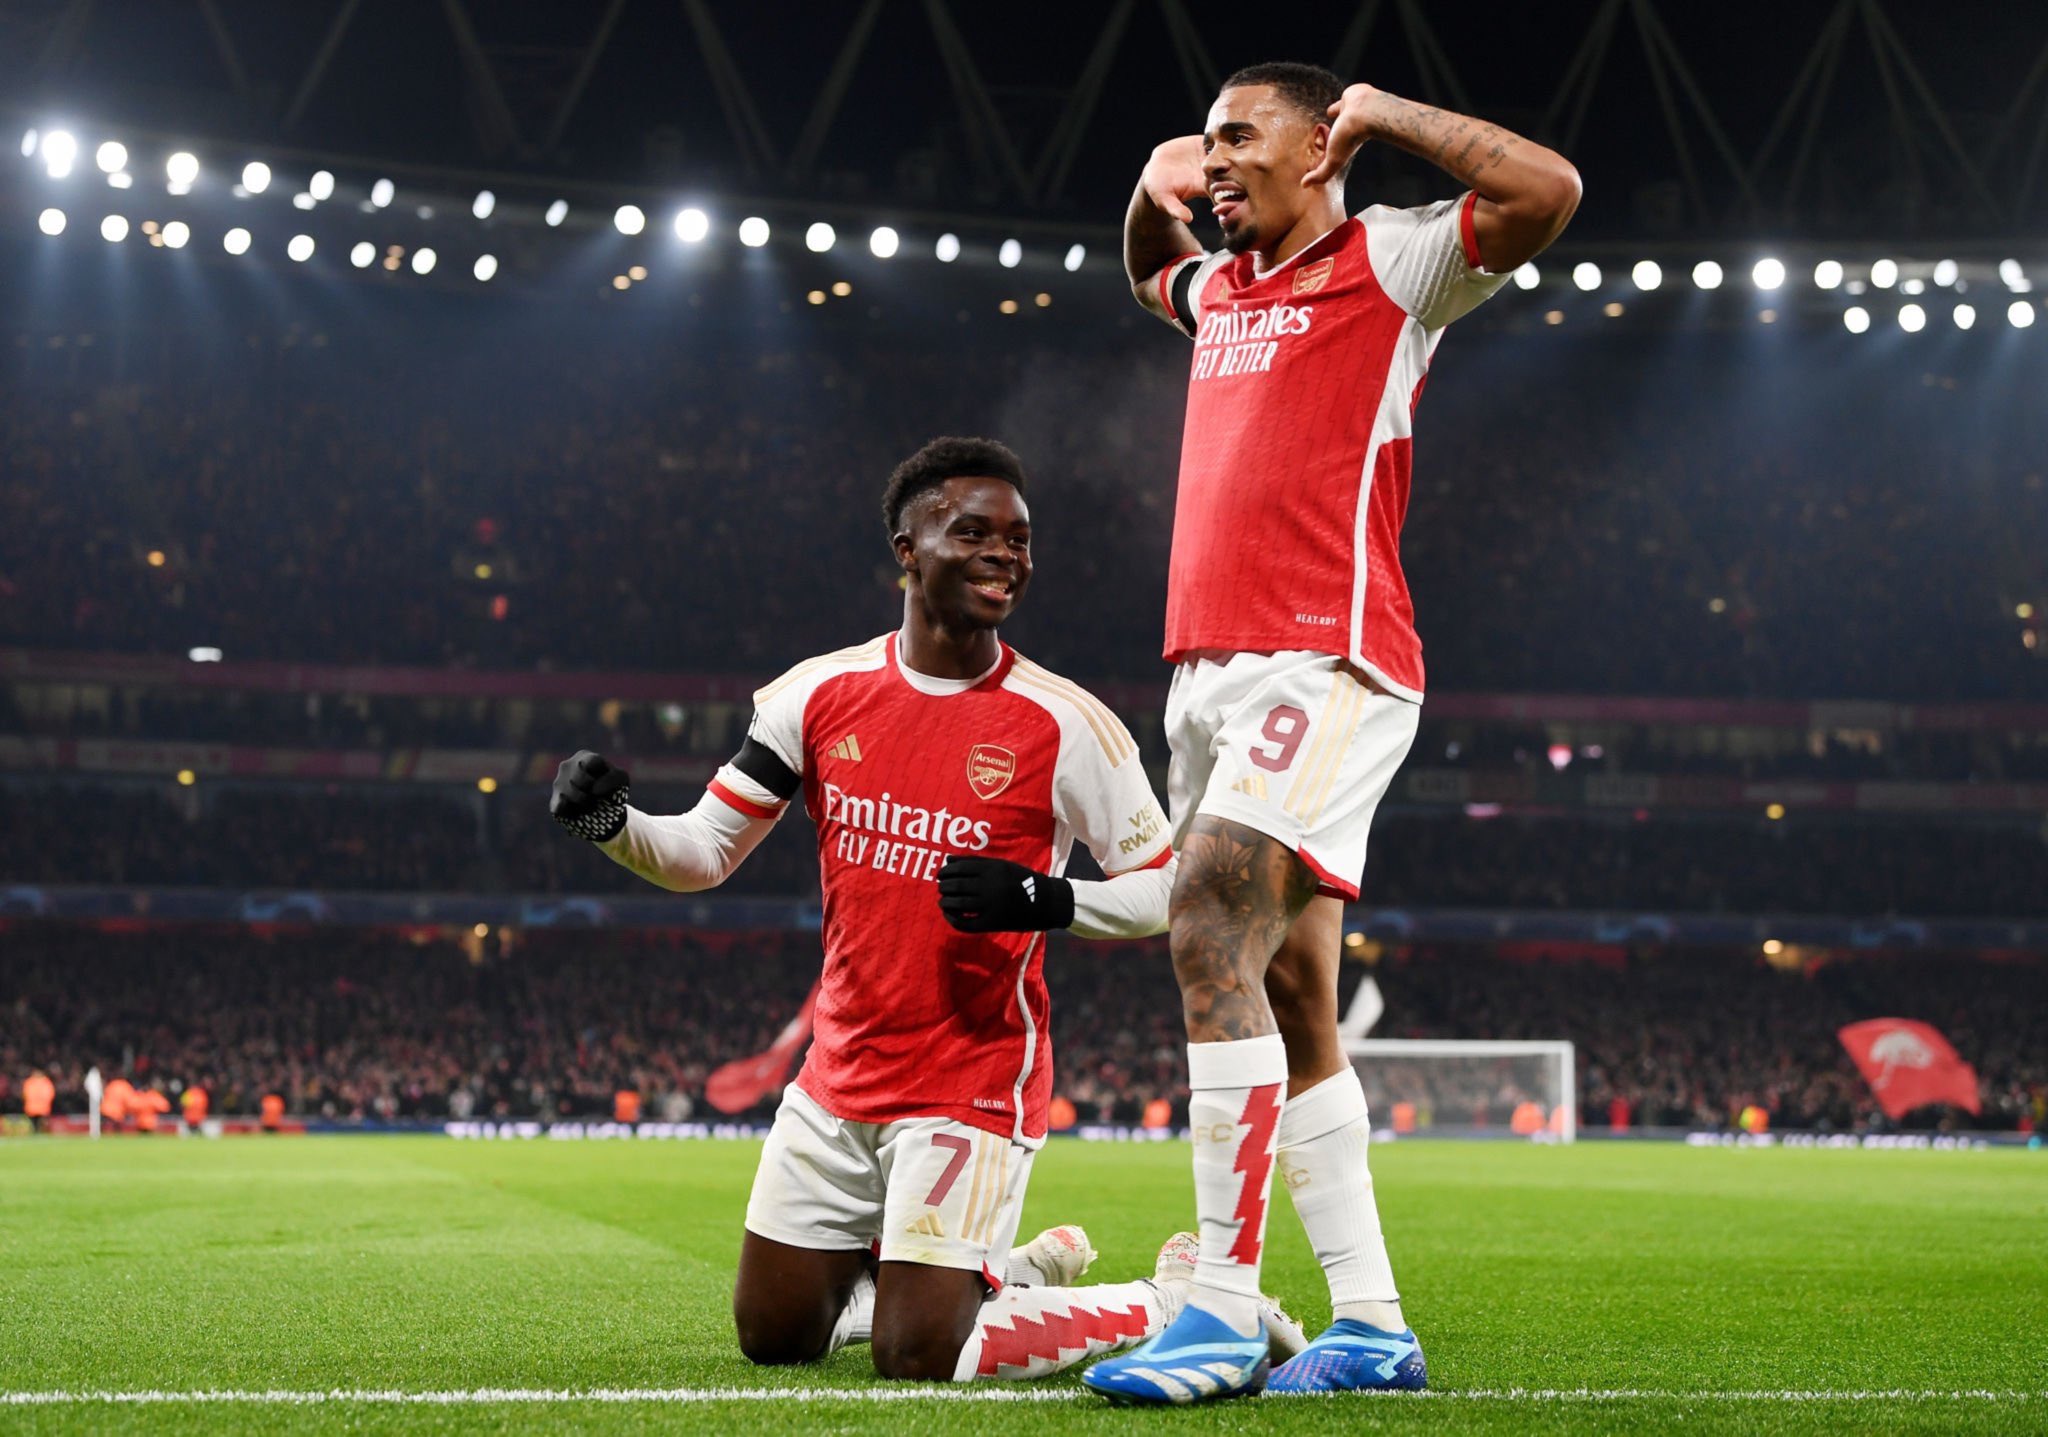 Historike/ Arsenali shpërfytyron rivalin me 5 gola që në pjesën e parë, i pari klub anglez që e bën këtë në Champions League